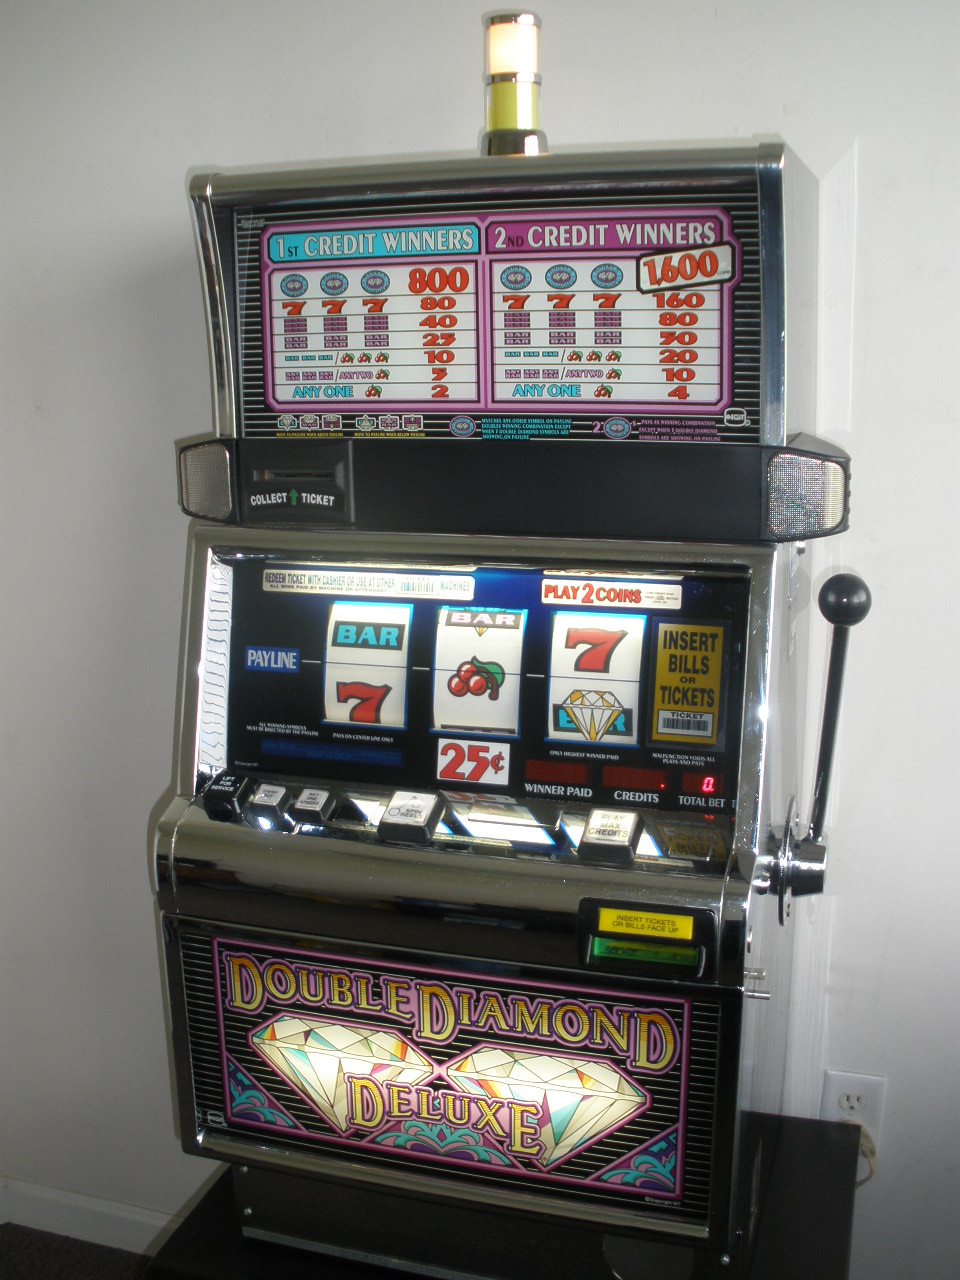 Double diamond deluxe slot machine